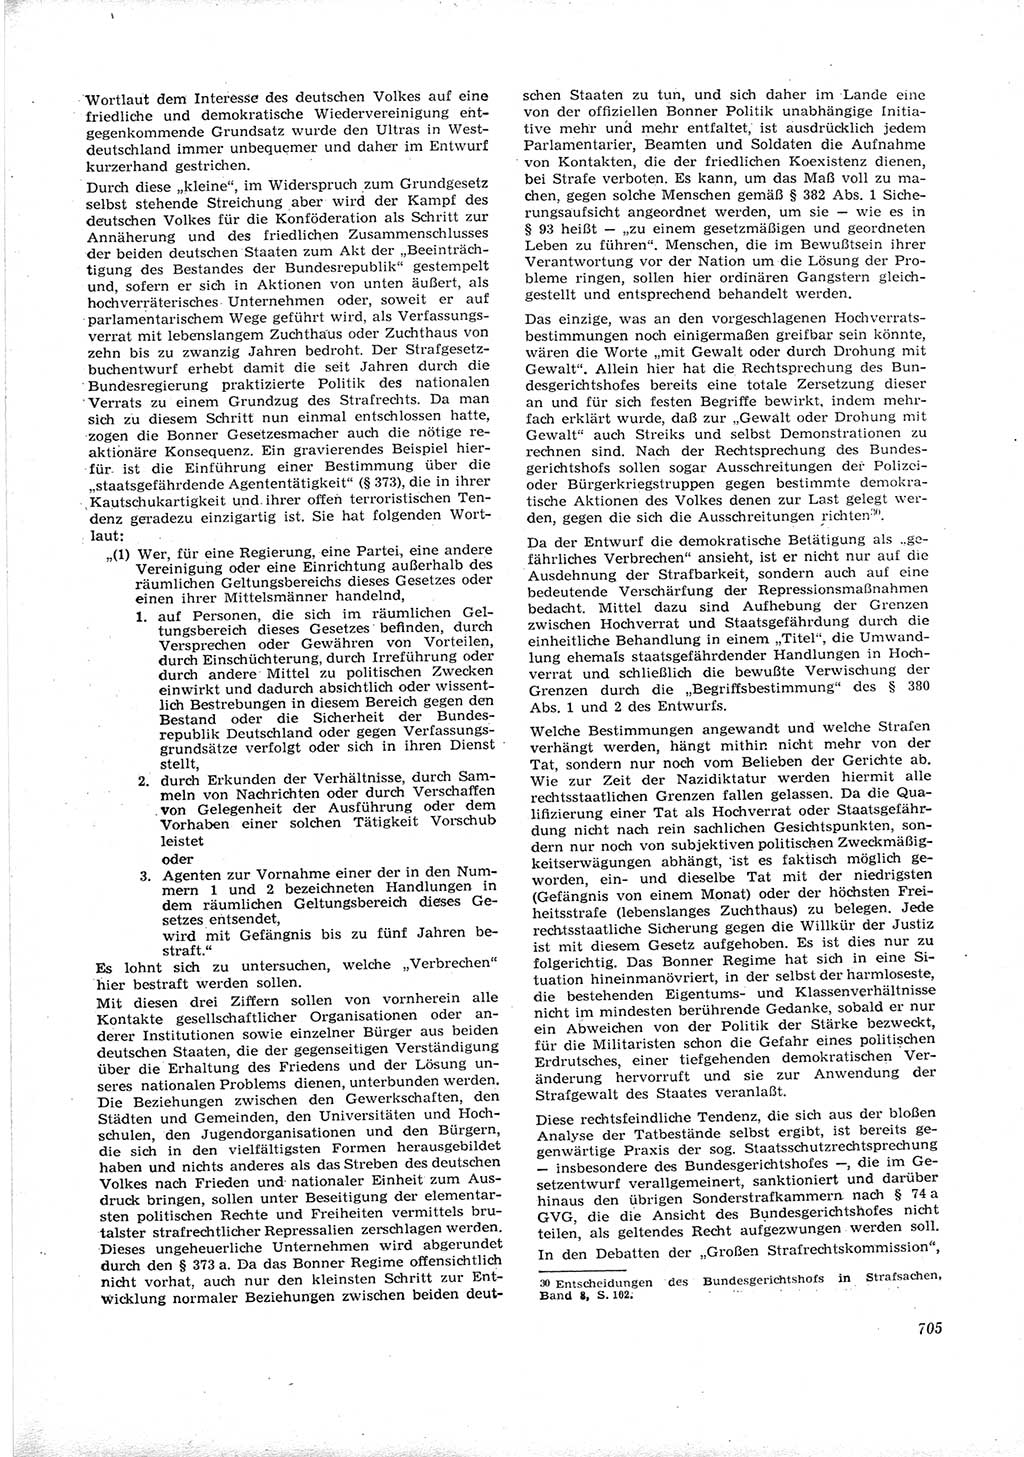 Neue Justiz (NJ), Zeitschrift für Recht und Rechtswissenschaft [Deutsche Demokratische Republik (DDR)], 16. Jahrgang 1962, Seite 705 (NJ DDR 1962, S. 705)